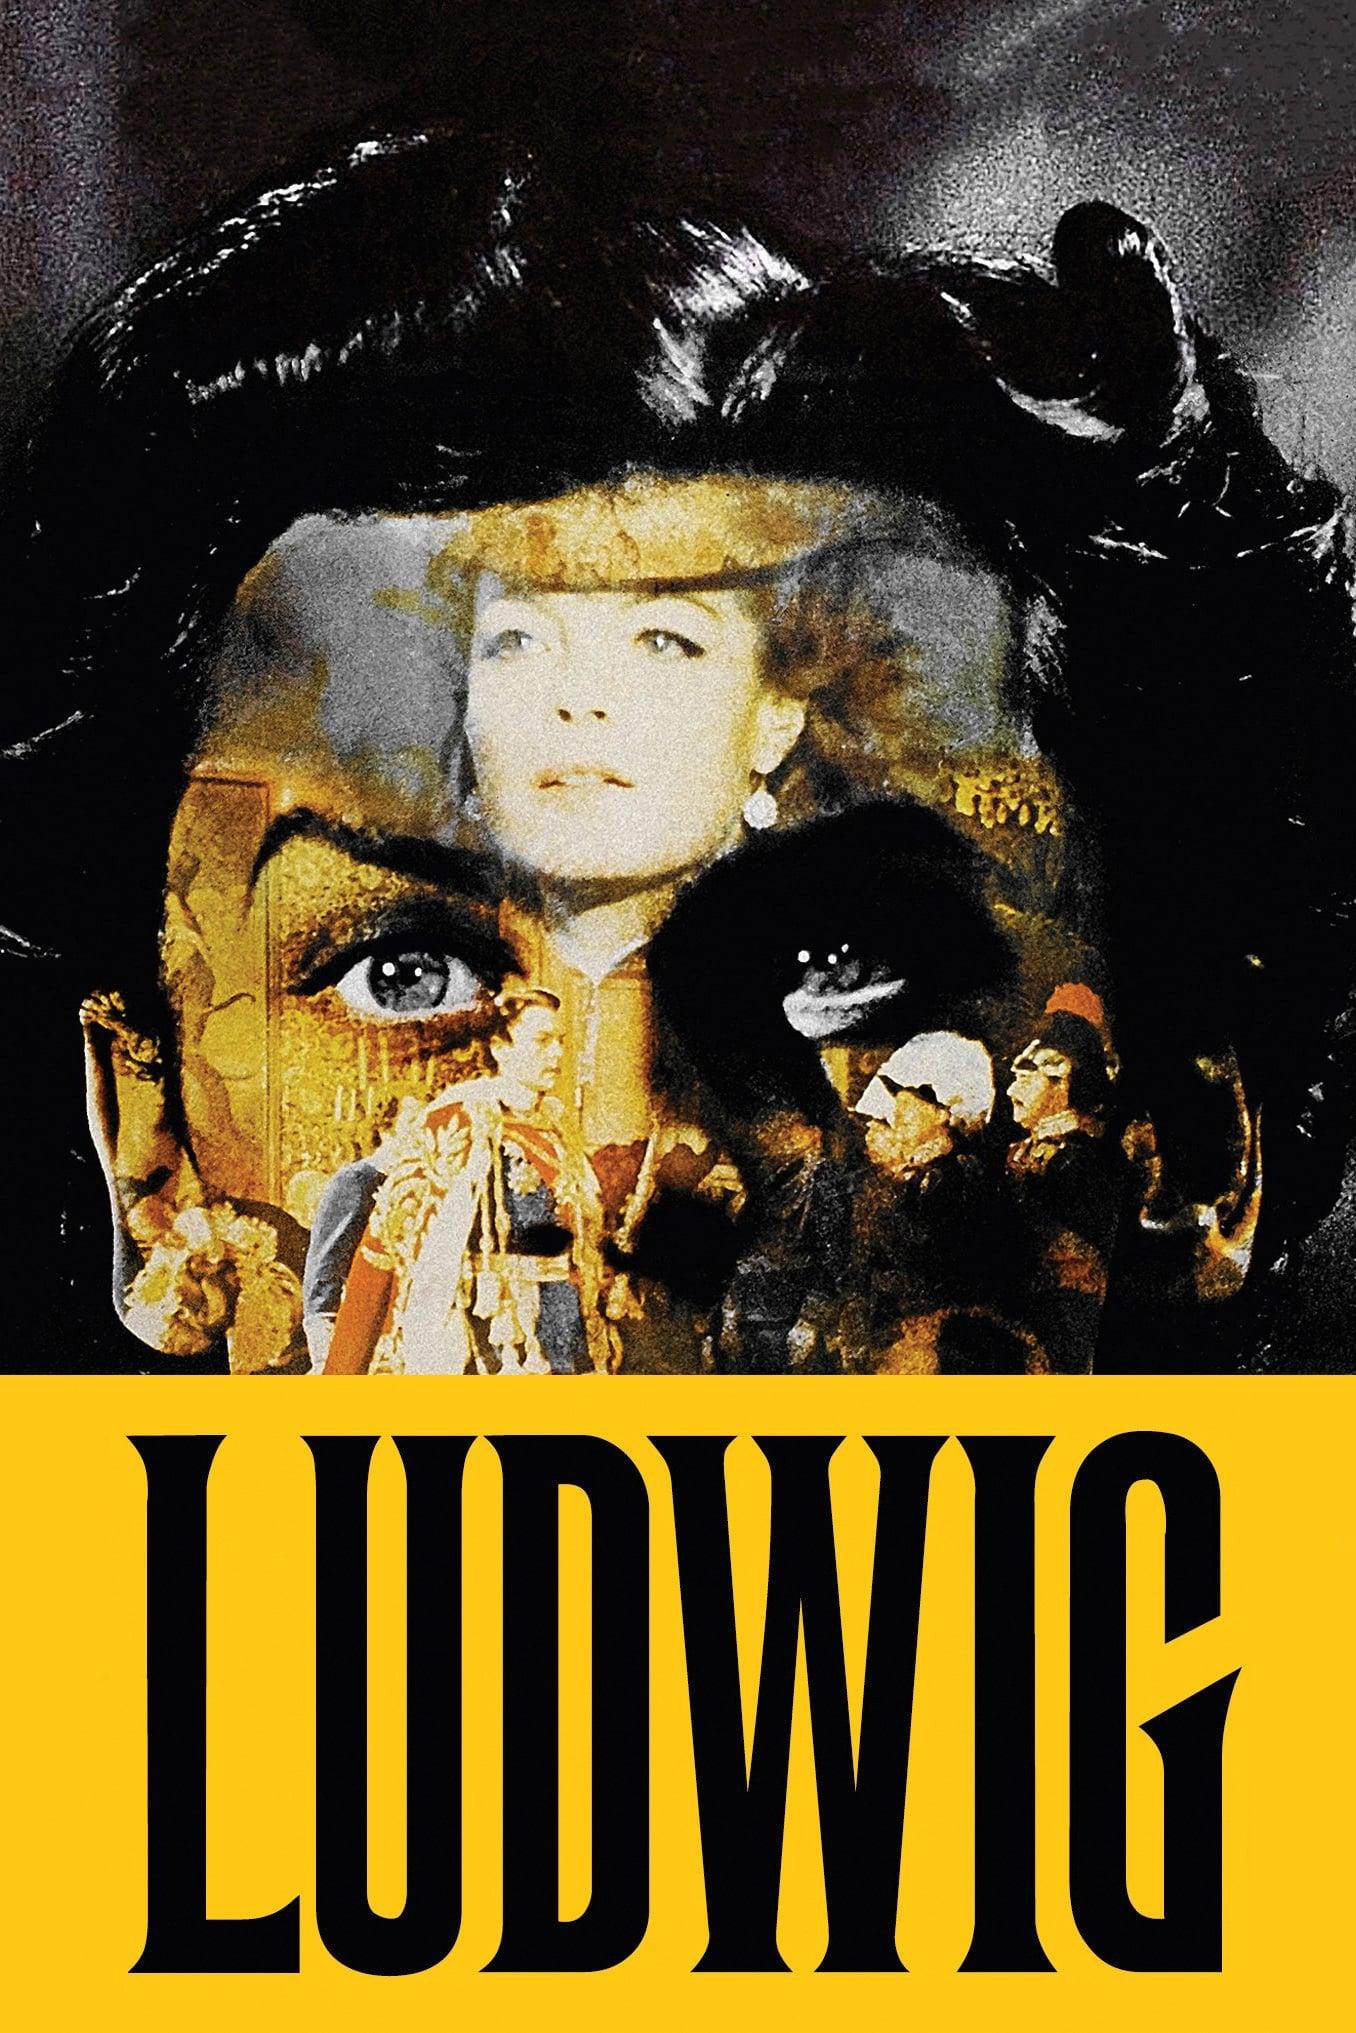 Ludwig II. poster